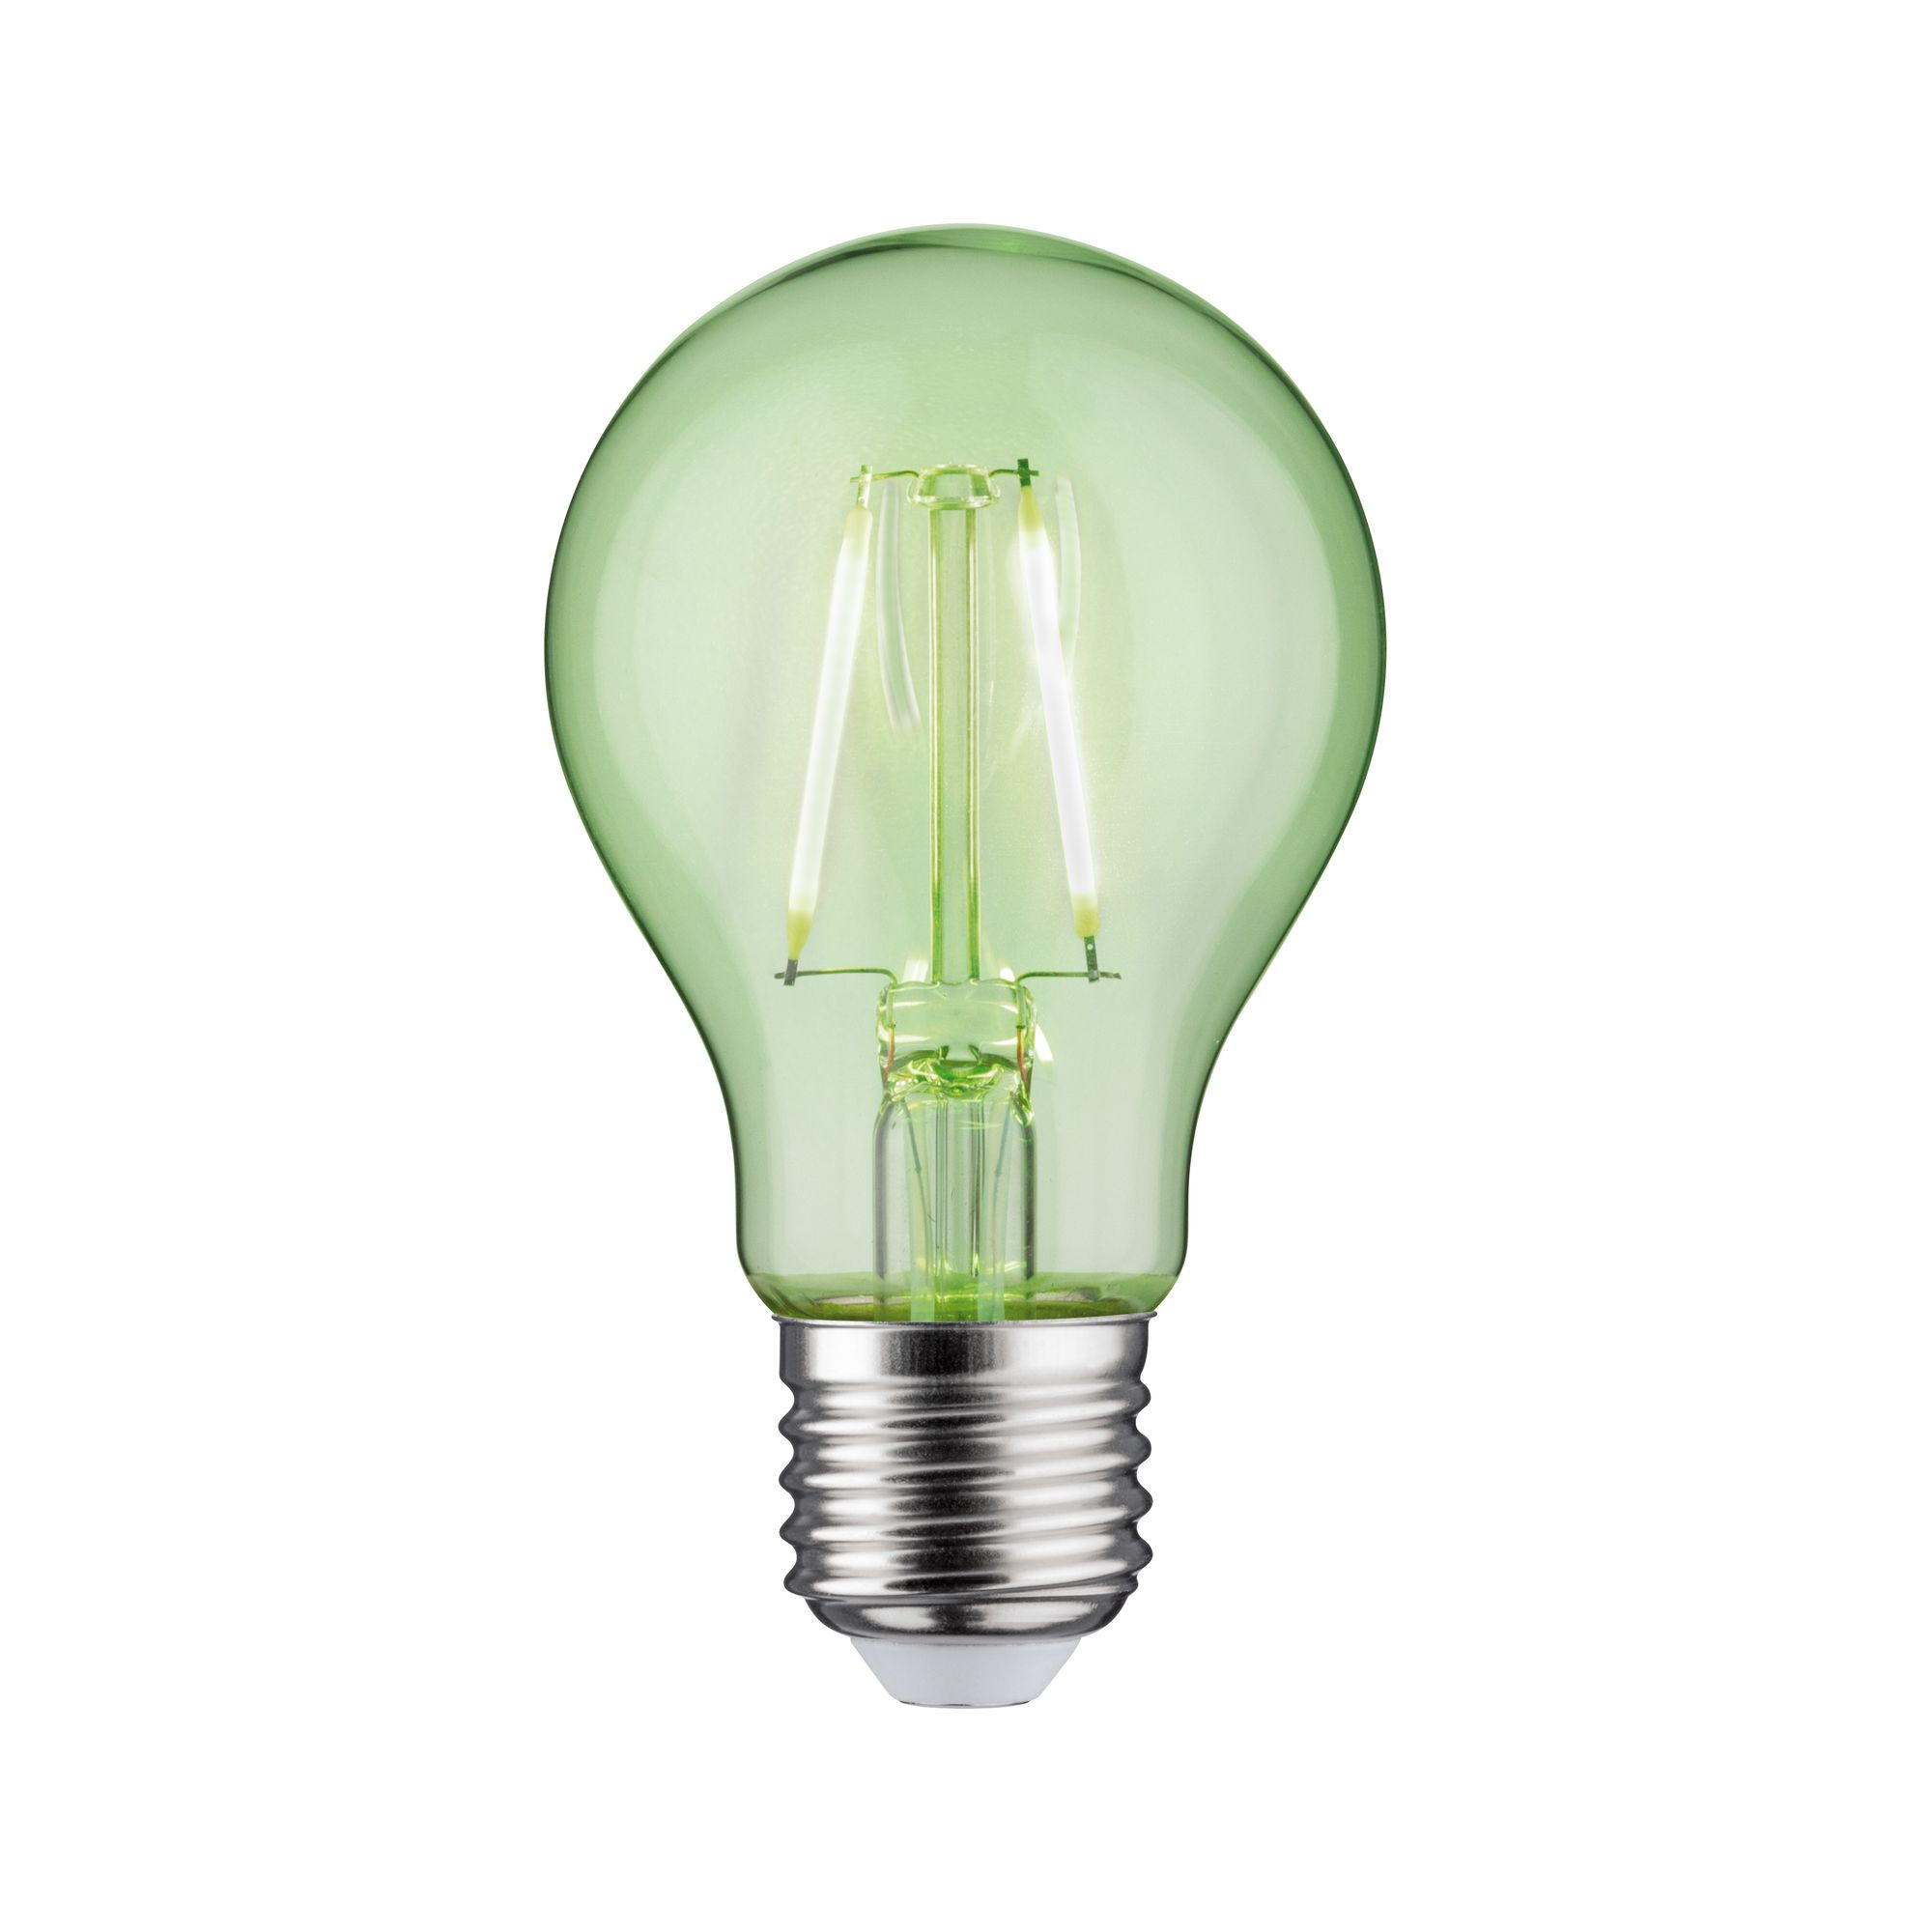 LED-Lampe E27 1,1W 170 lm grün klar + product picture